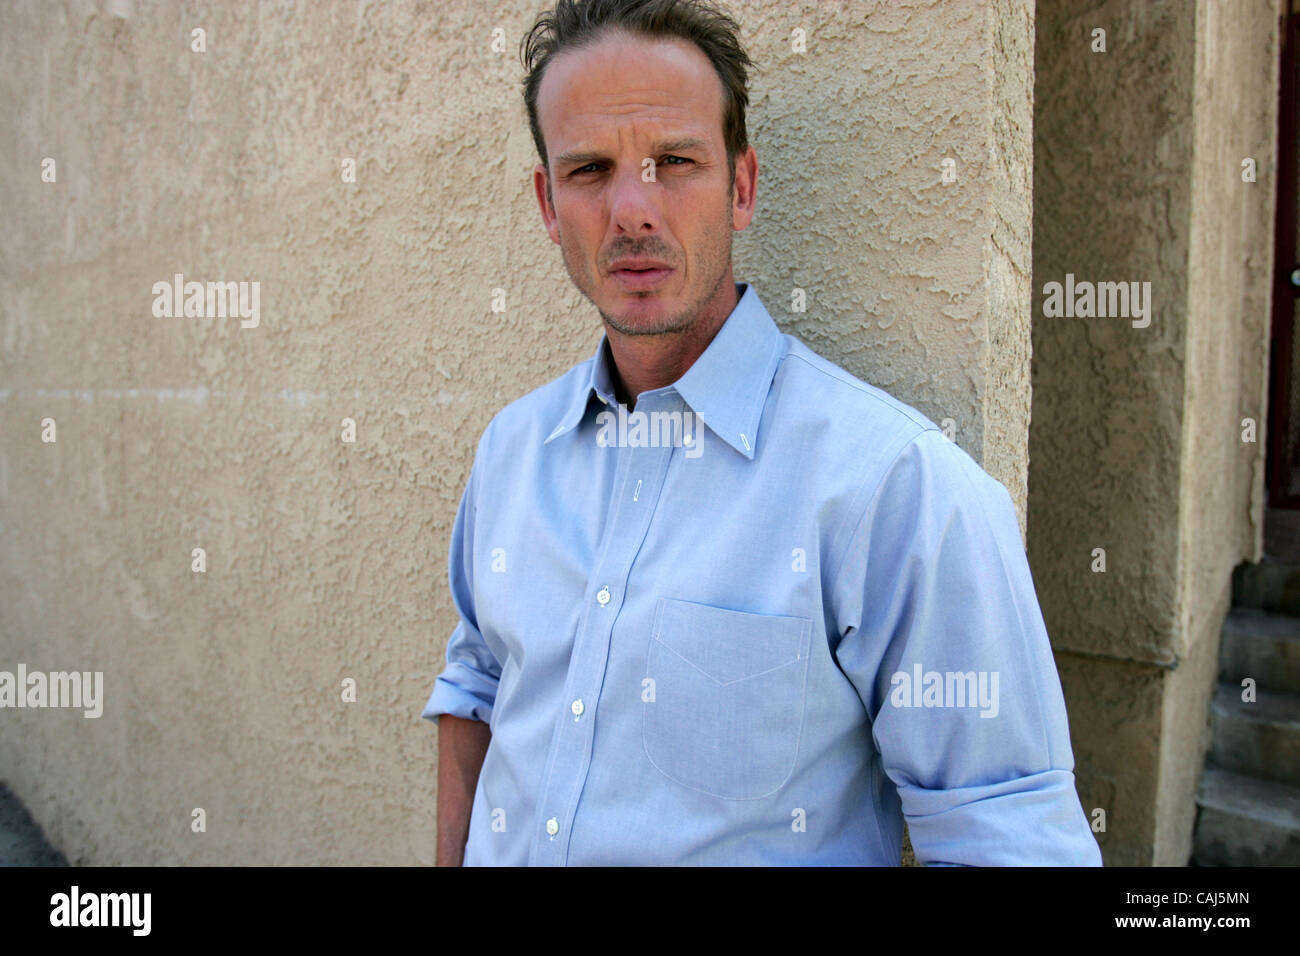 Schauspieler und Regisseur Peter Berg wird in Santa Monica fotografiert. Berg ist der Regisseur von The Kingdom. (Foto von Ringo Chiu / Zuma Press) Stockfoto